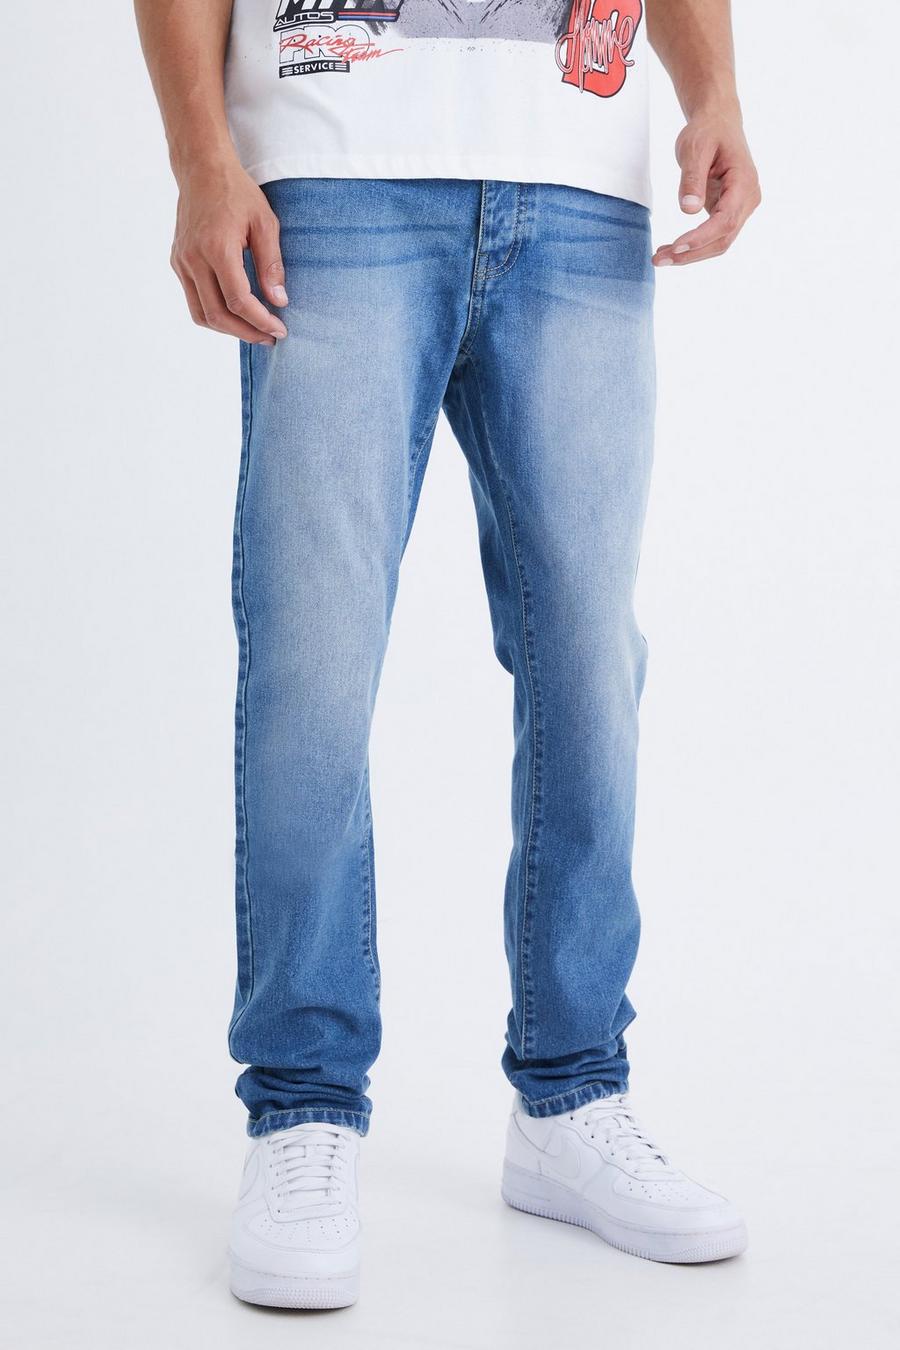 Jeans Tall Slim Fit in denim rigido, Mid blue